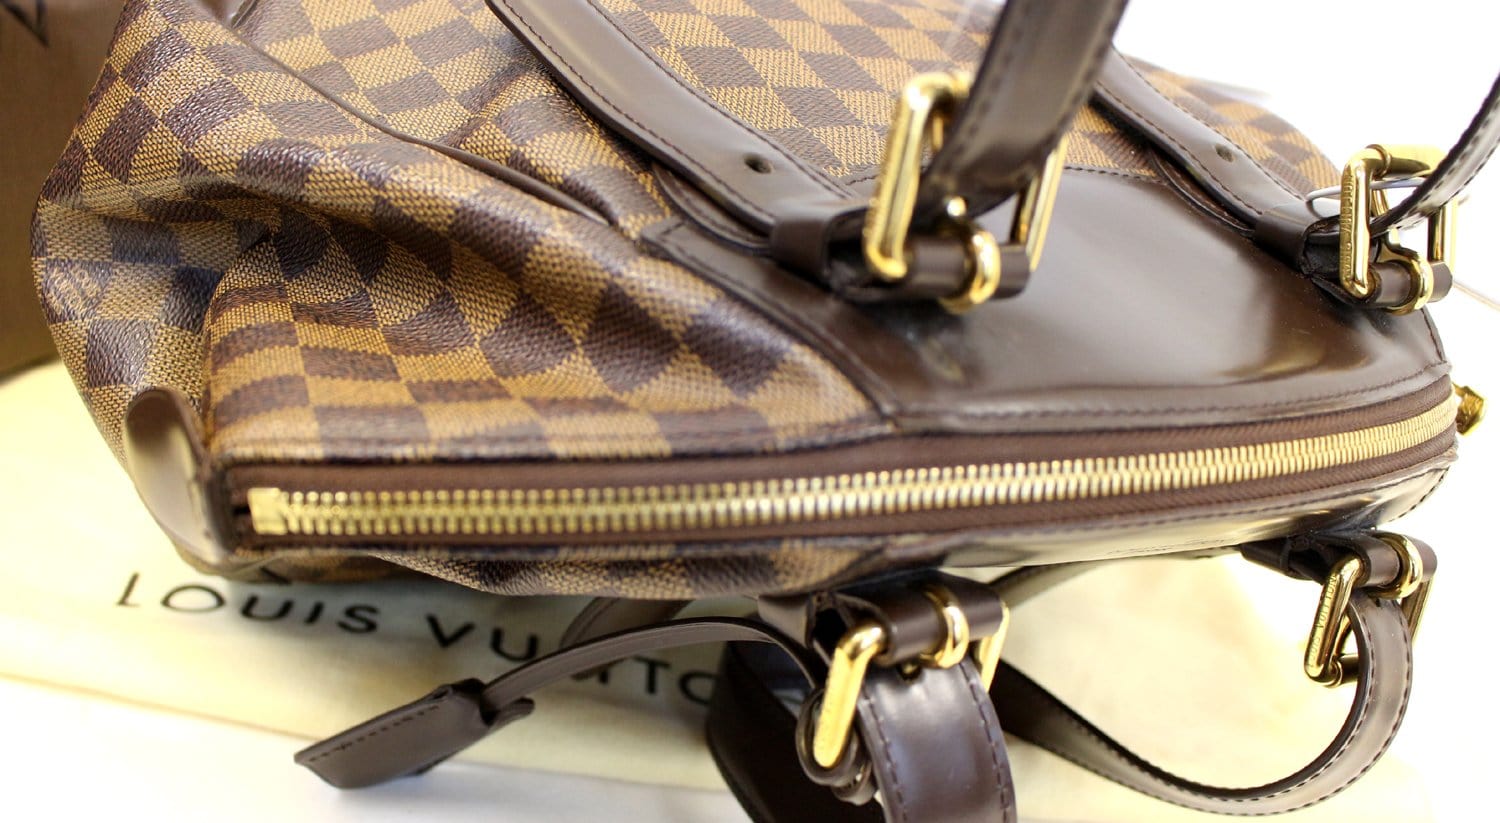 Louis Vuitton Verona MM - ShopStyle Shoulder Bags